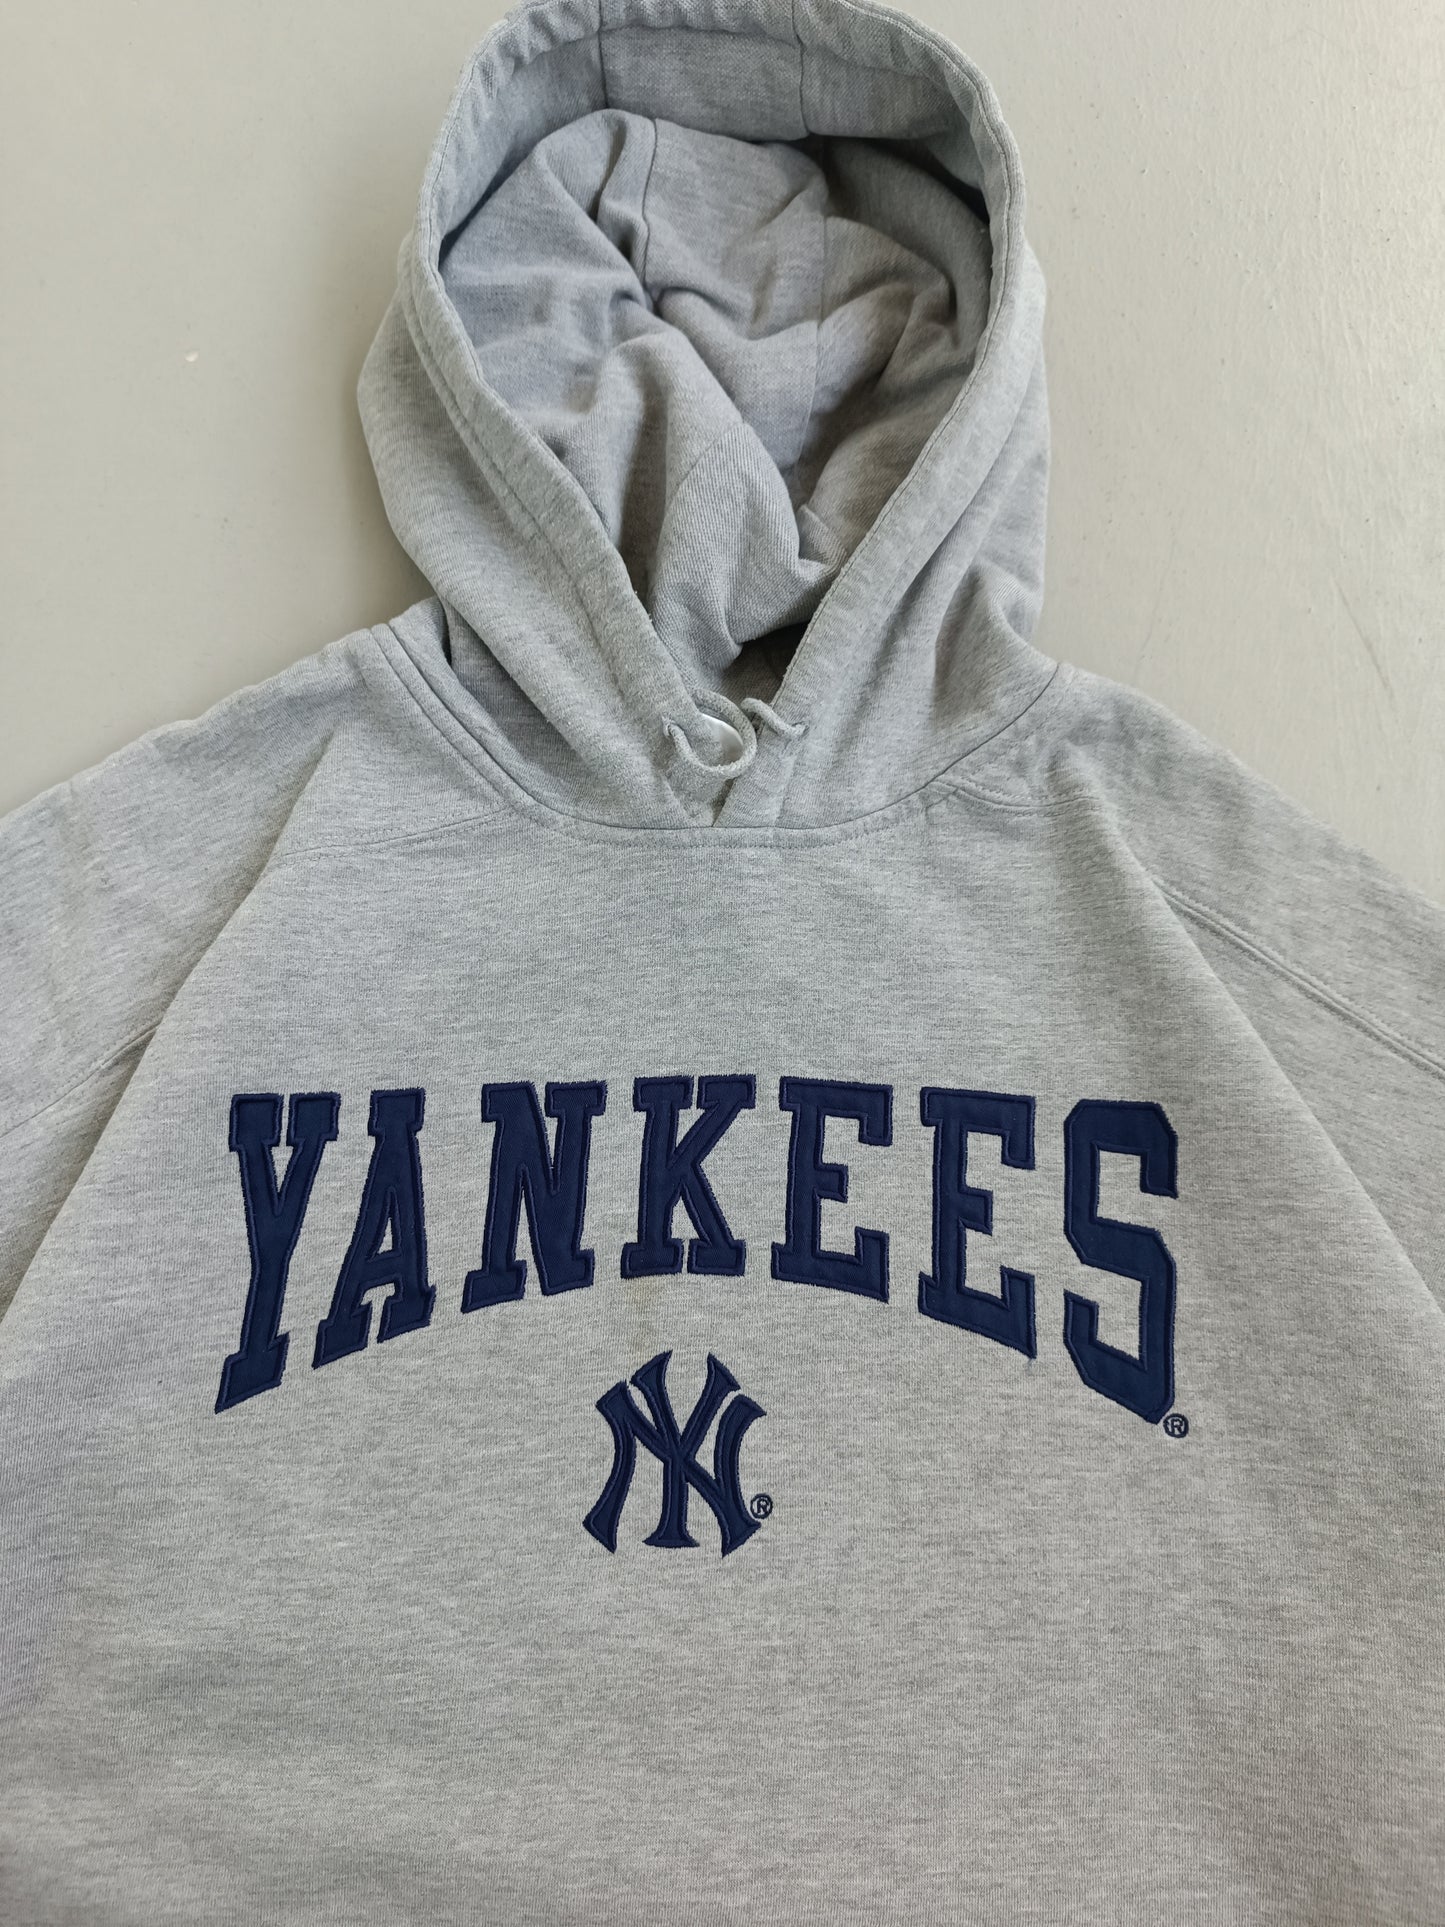 Adidas Yankees Hoodie - XL